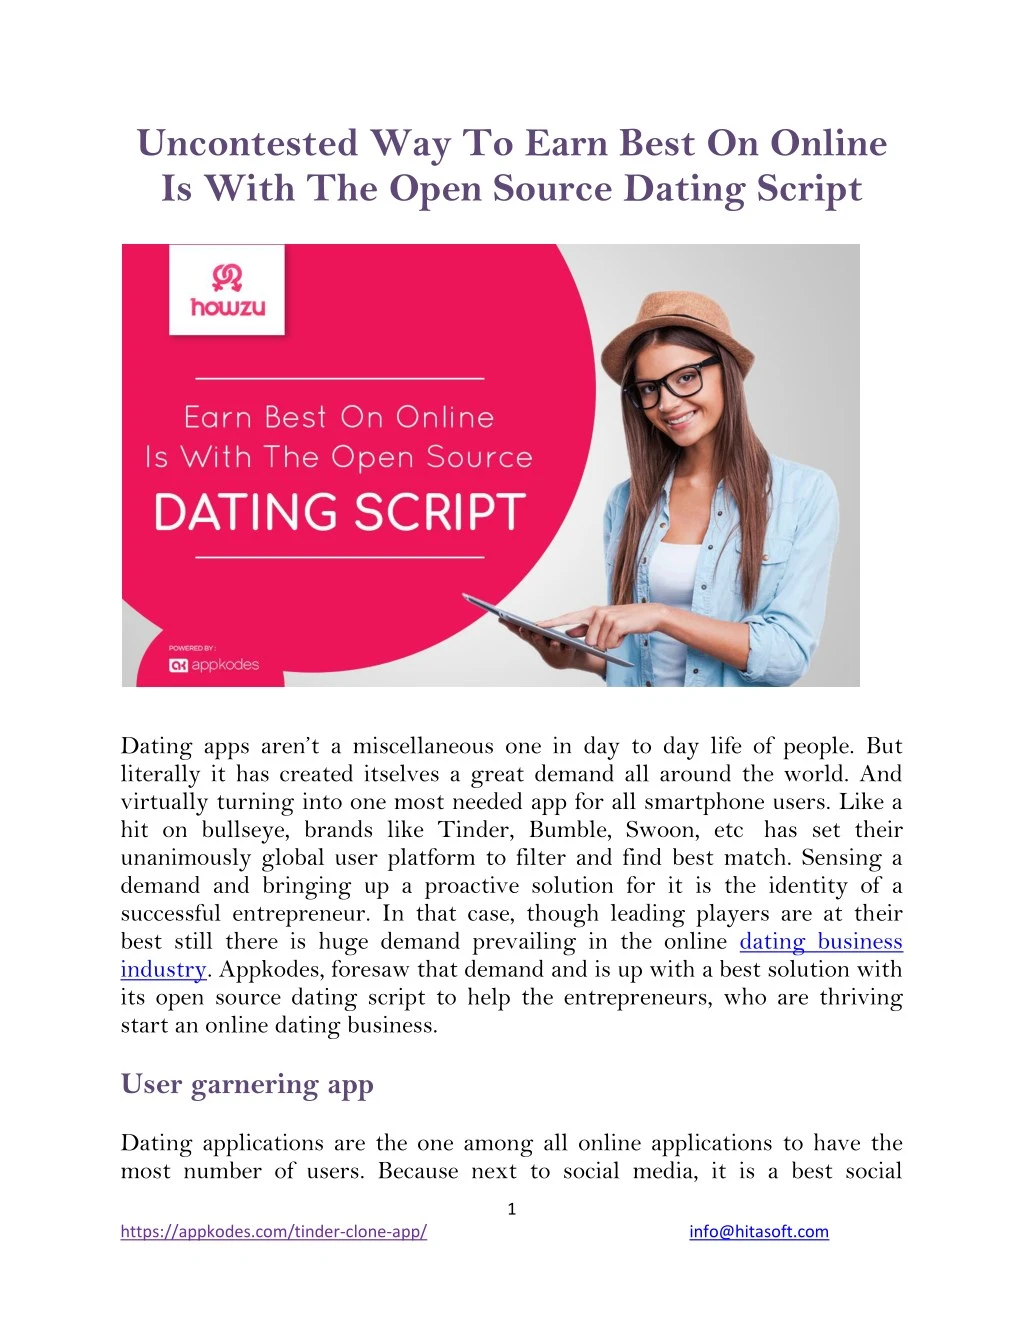 open source dating app